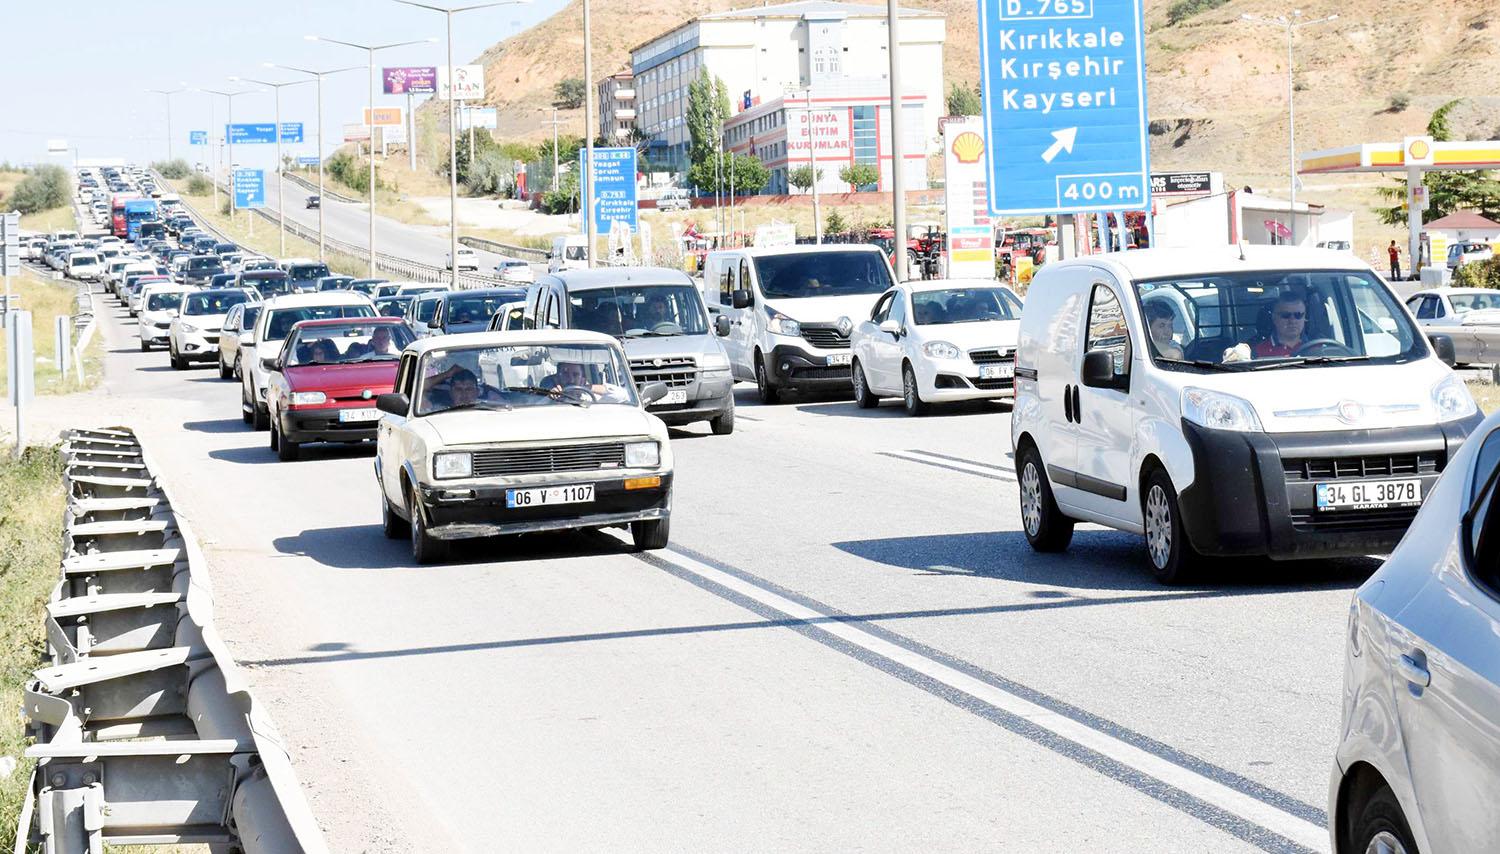 Kırıkkale’de Motorlu taşıt sayısı 261 adet düştü - Kırıkkale Haber, Son Dakika Kırıkkale Haberleri